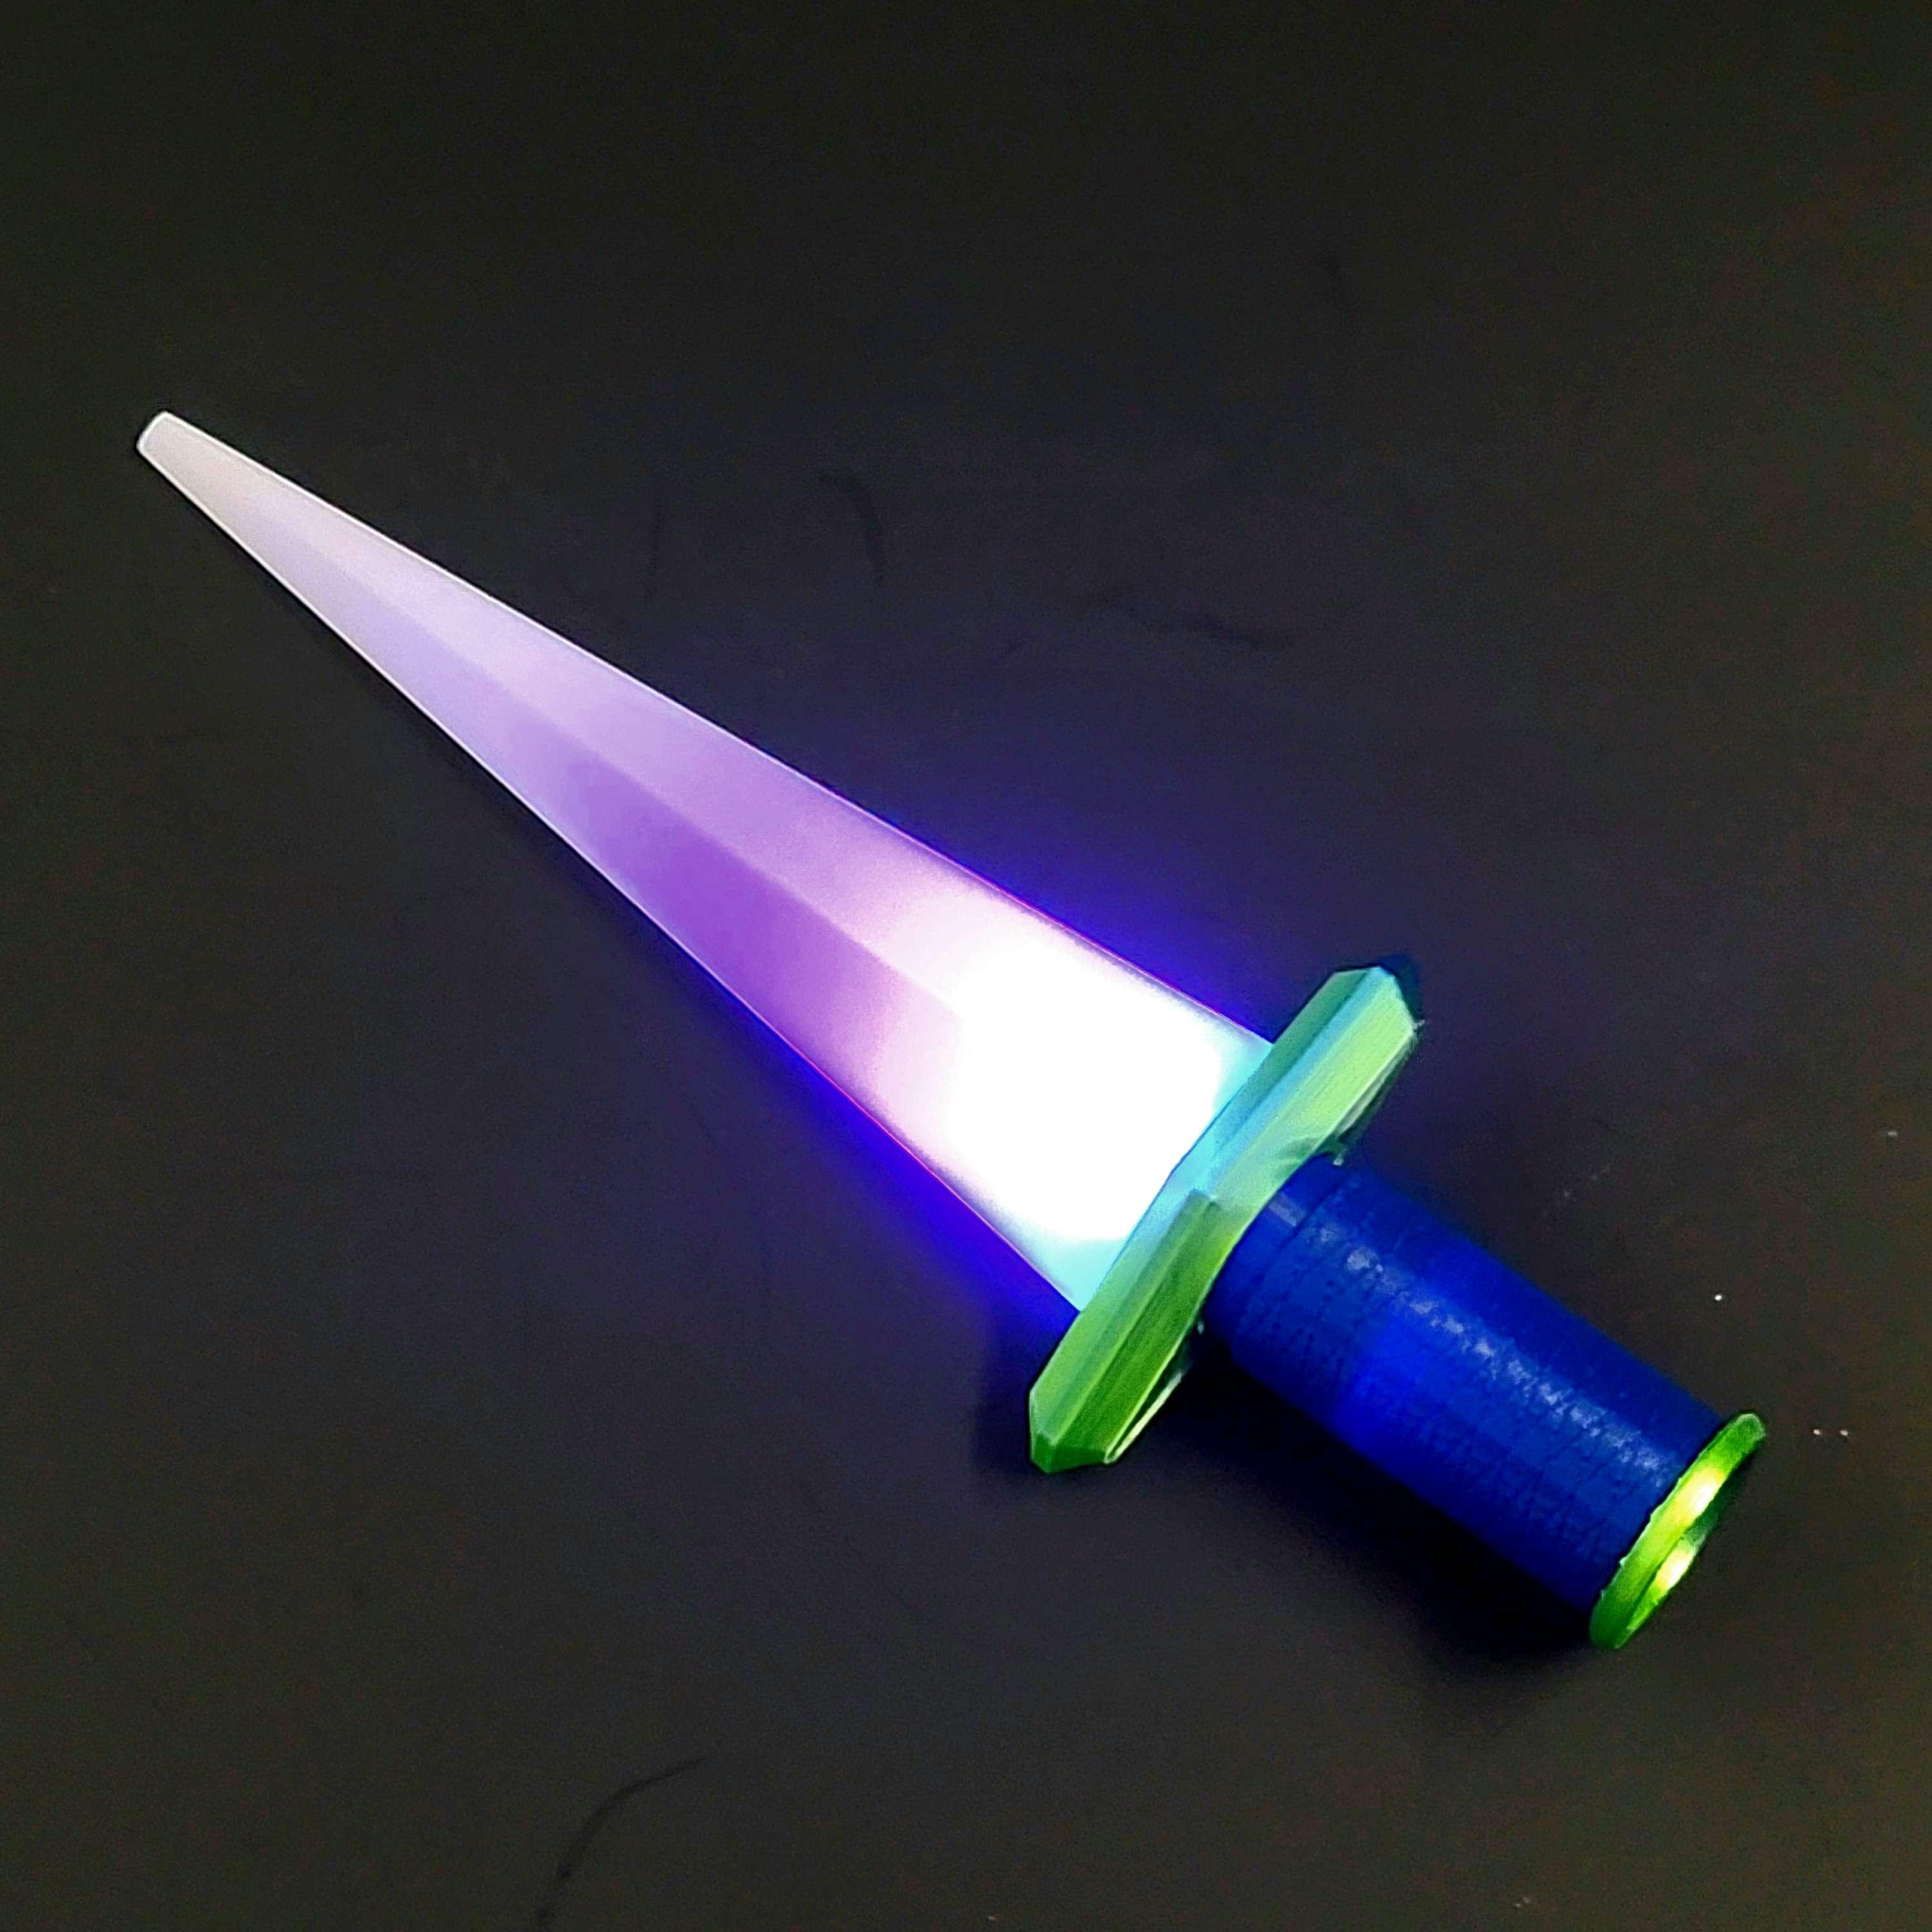 Light Up Mini Sword (Uses Balloon Lights) 3d model